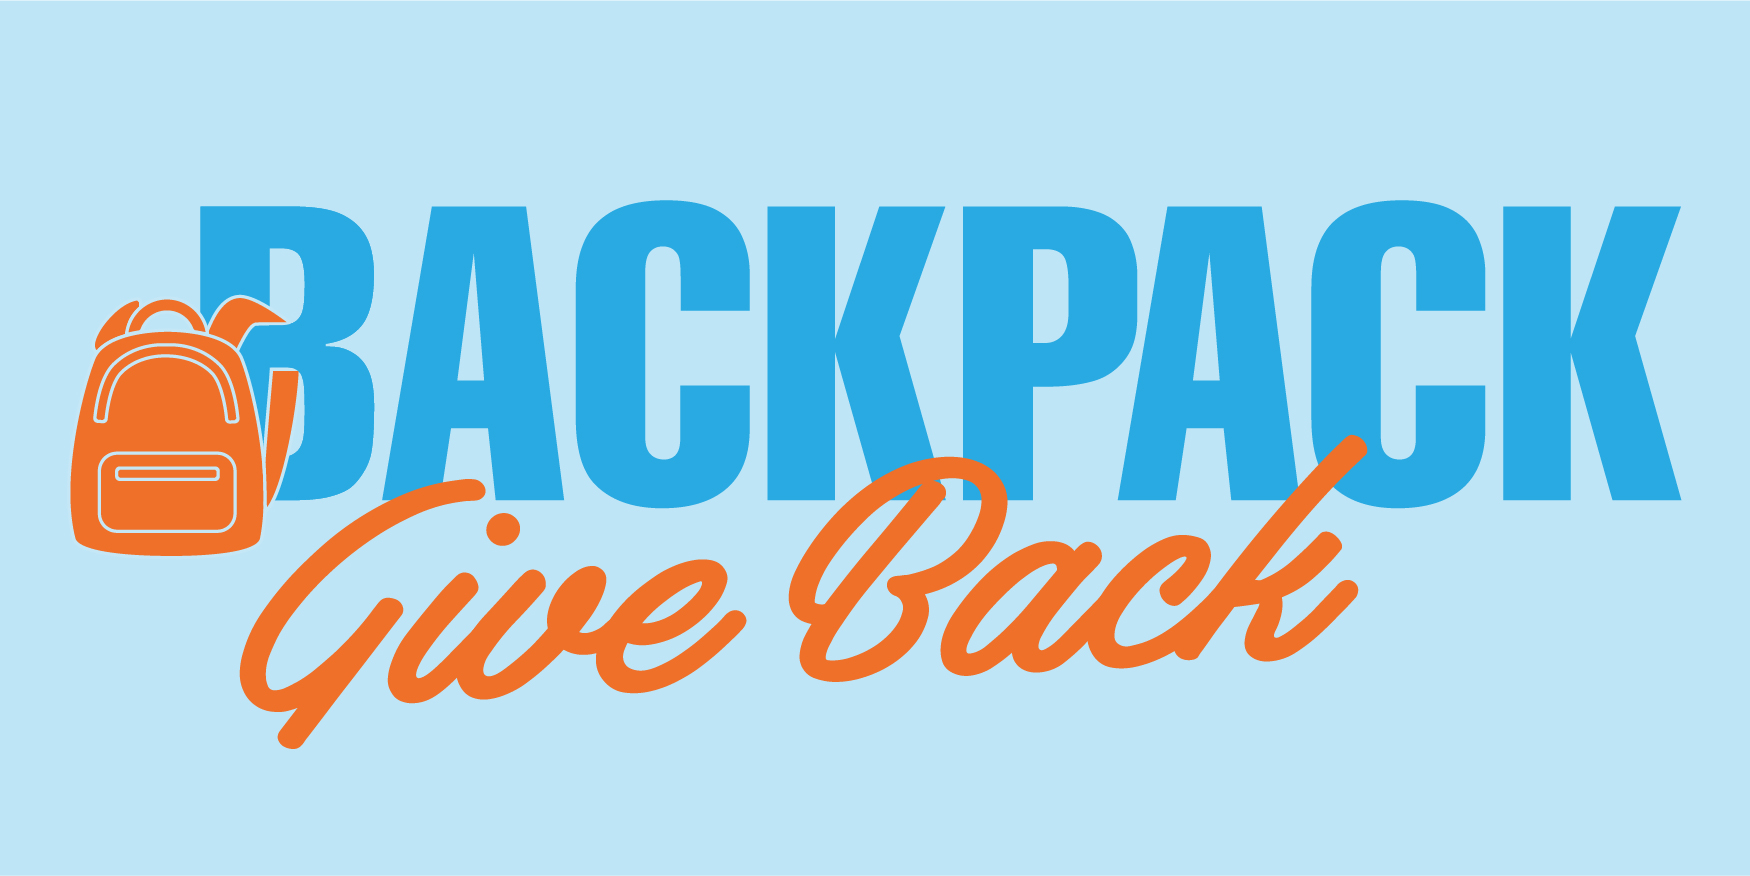 Backpack Give Back 2021